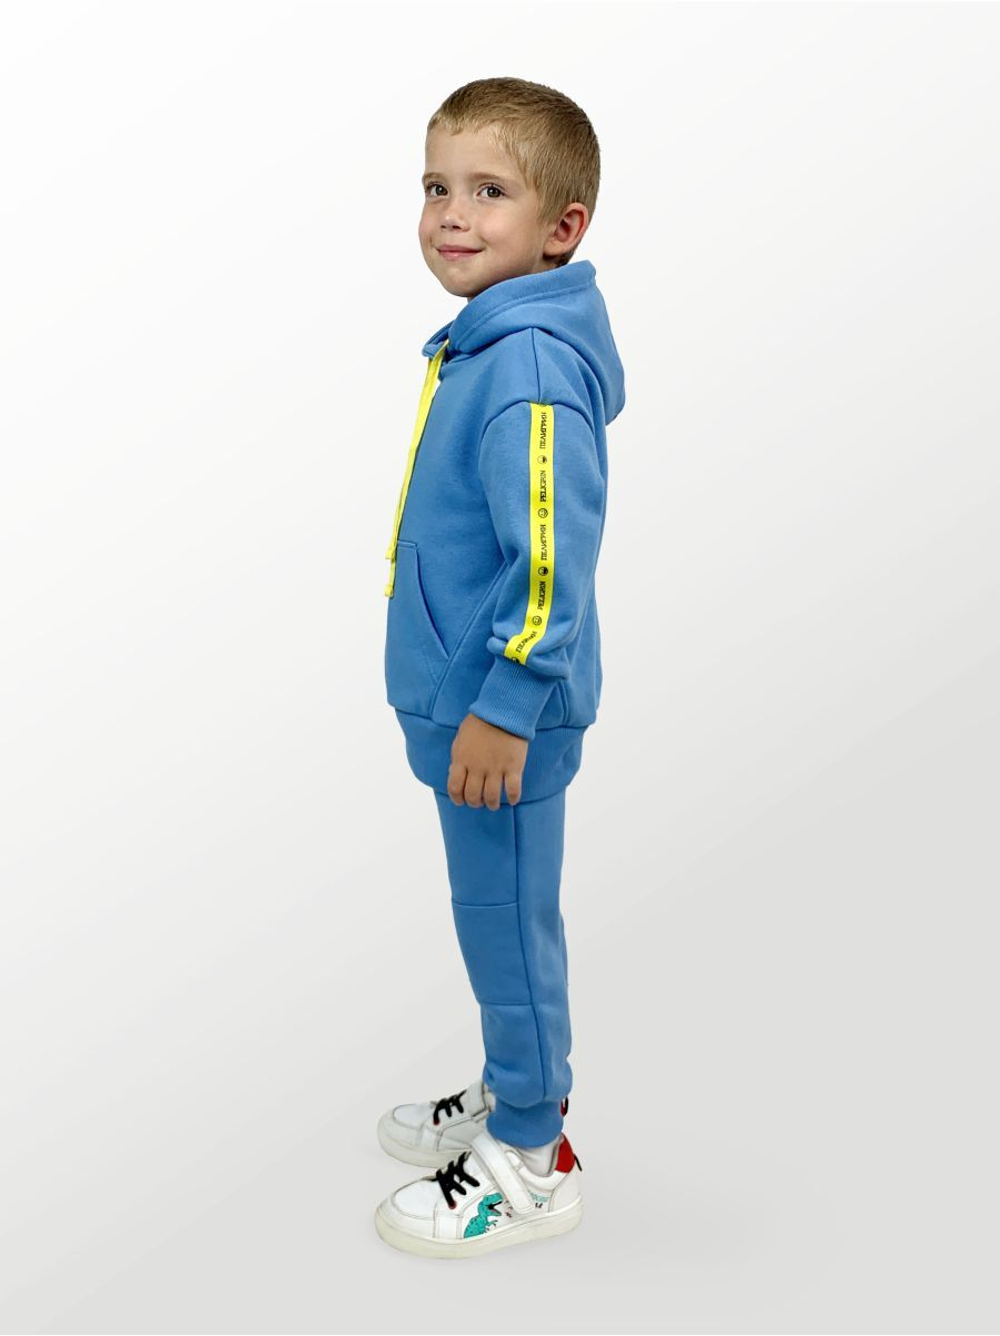 Брюки для детей, модель №2 (джоггеры), рост 104 см, голубые